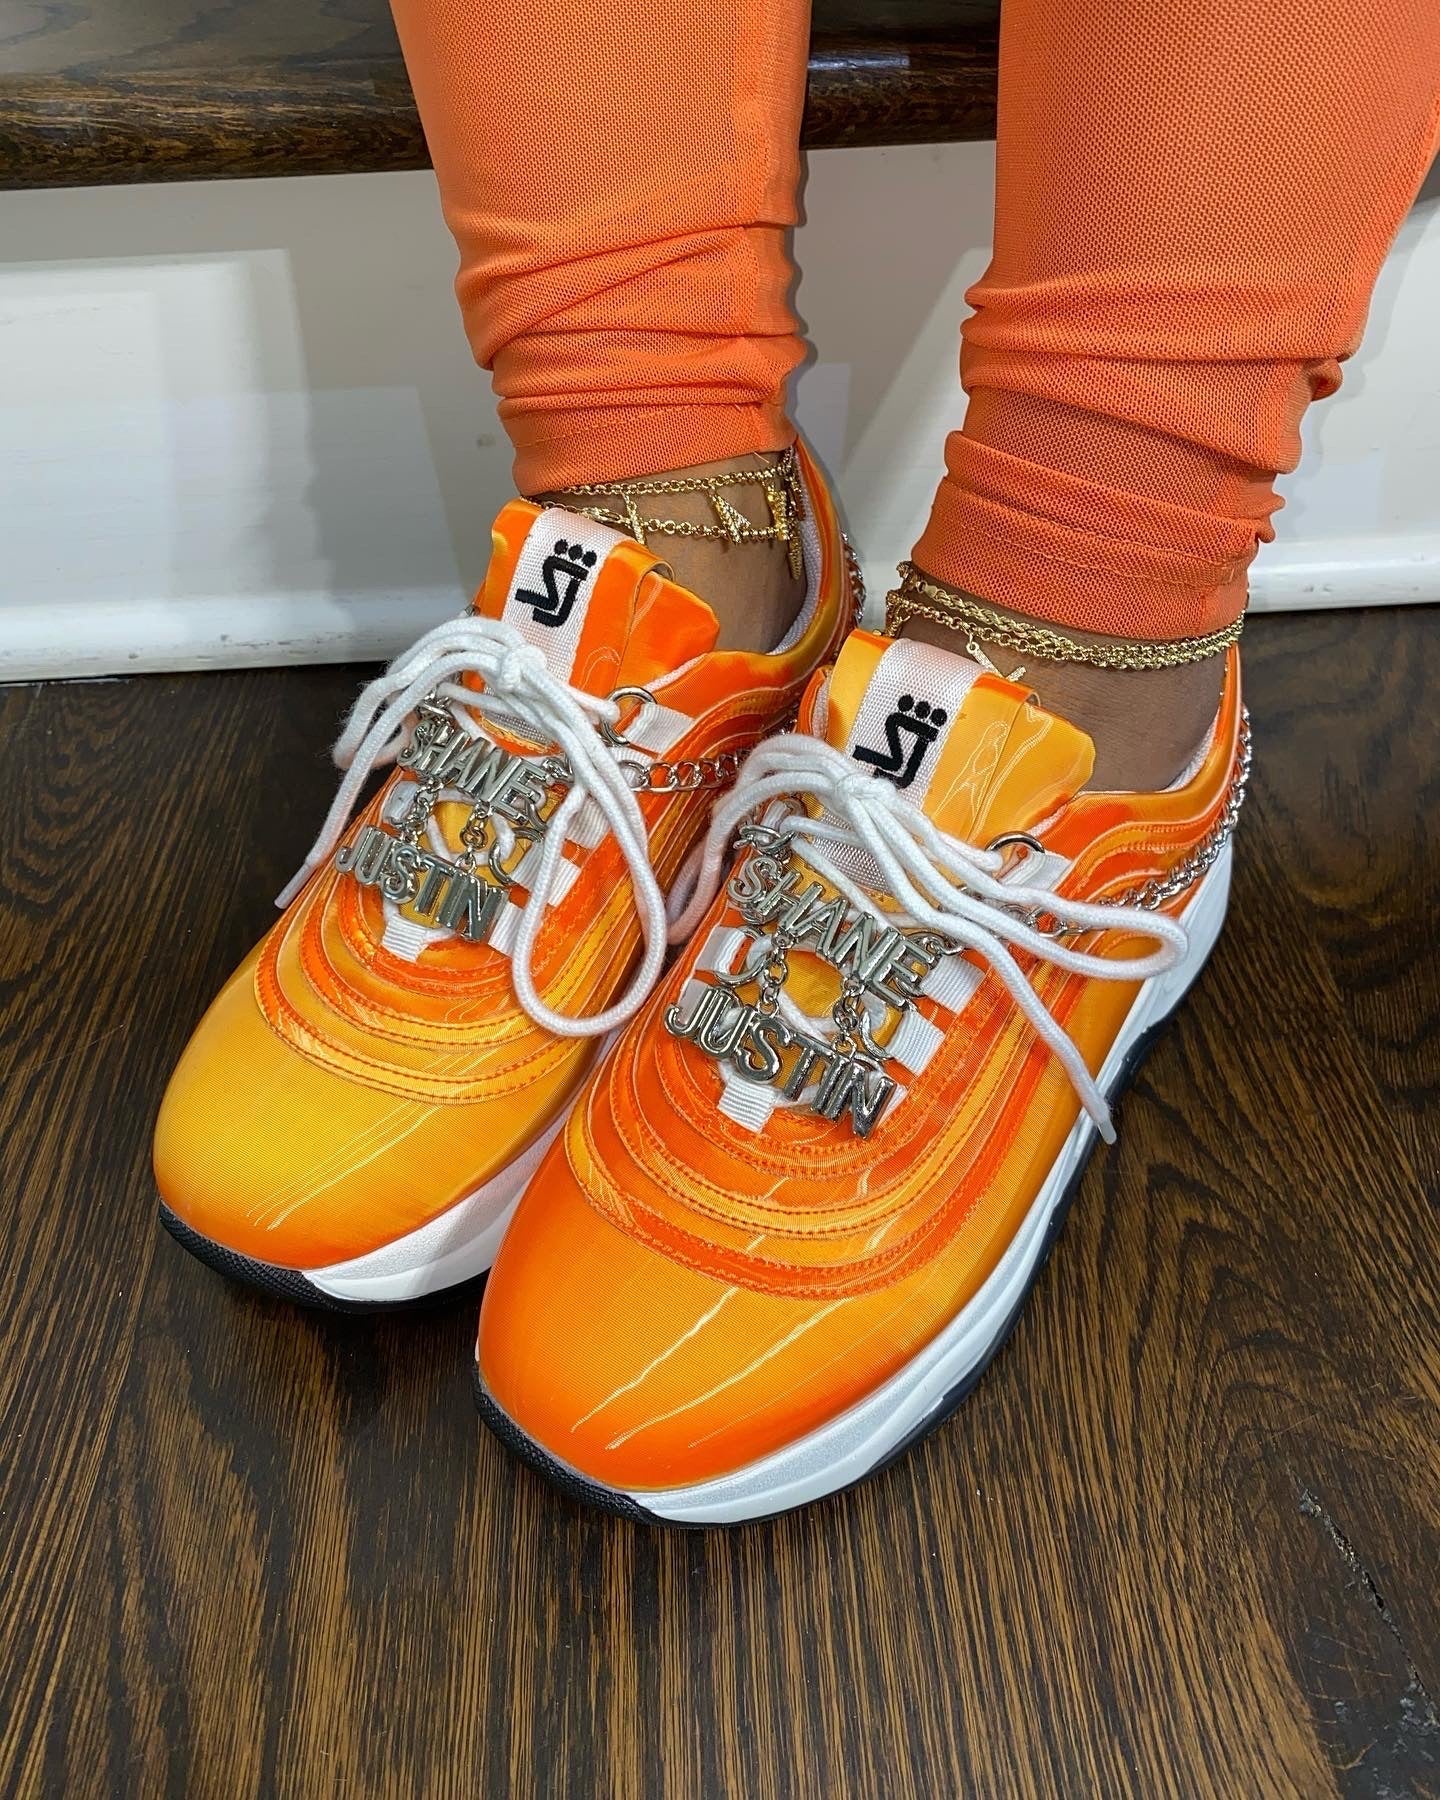 Whirlpool Orange Sneakers